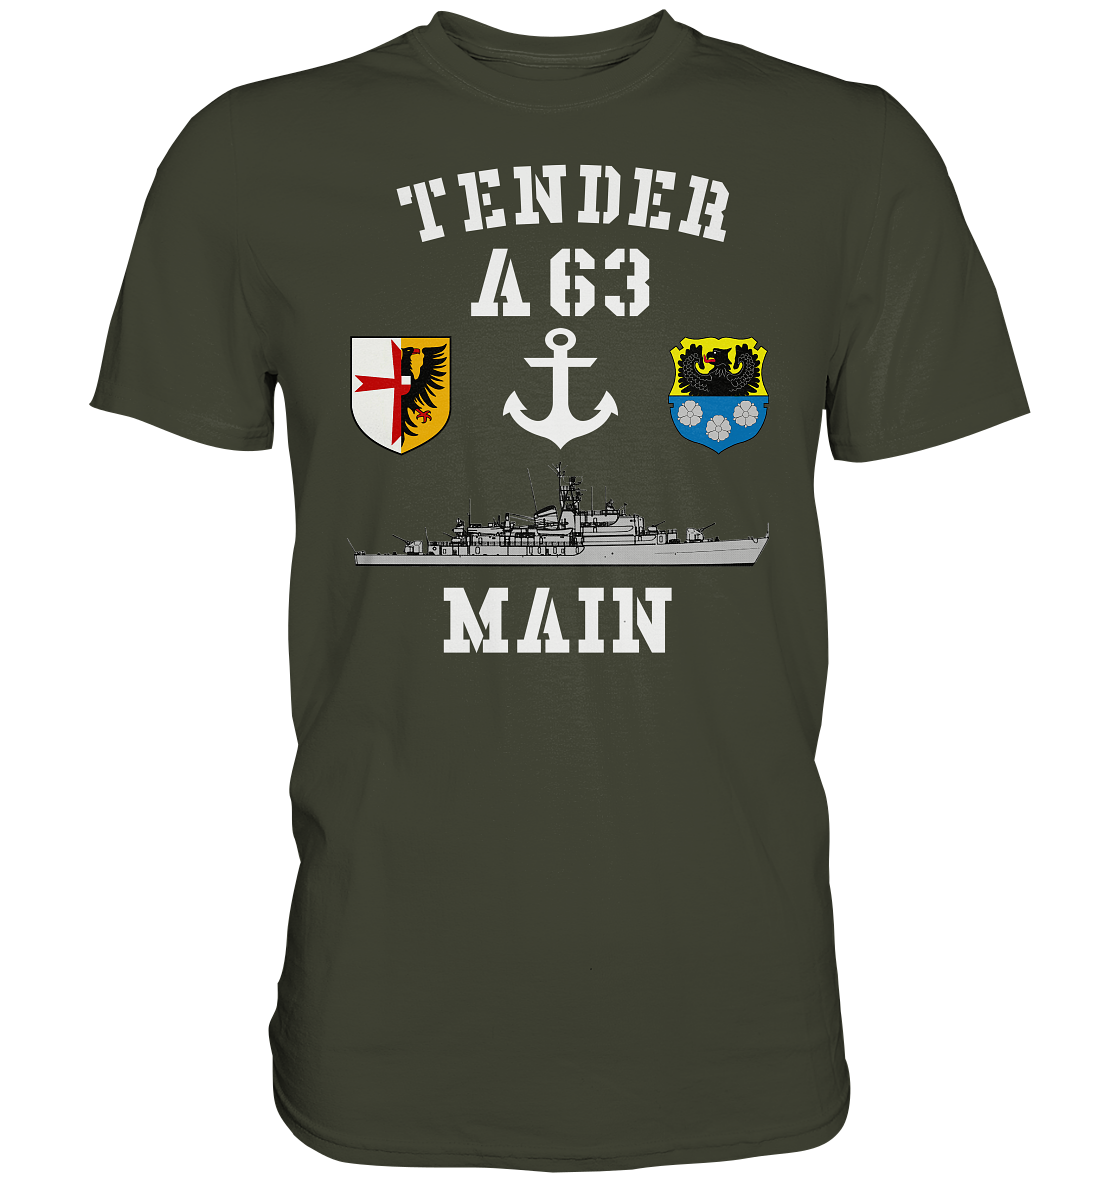 Tender A63 MAIN 5.SG ANKER - Premium Shirt